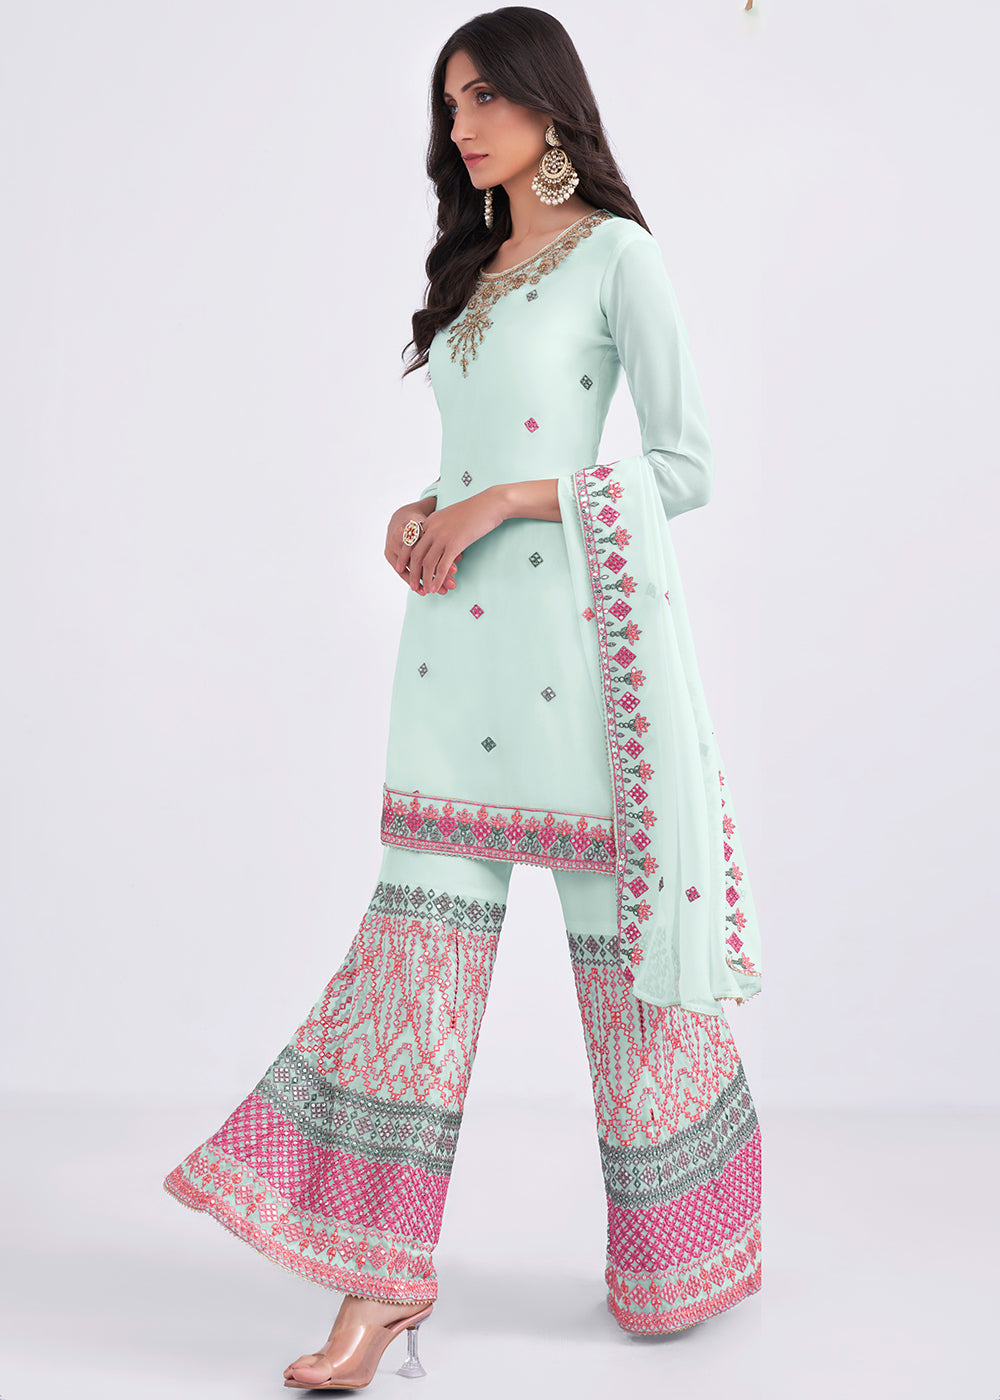 Latest Bridal Sharara Designs  Gorgeous long sharara pants